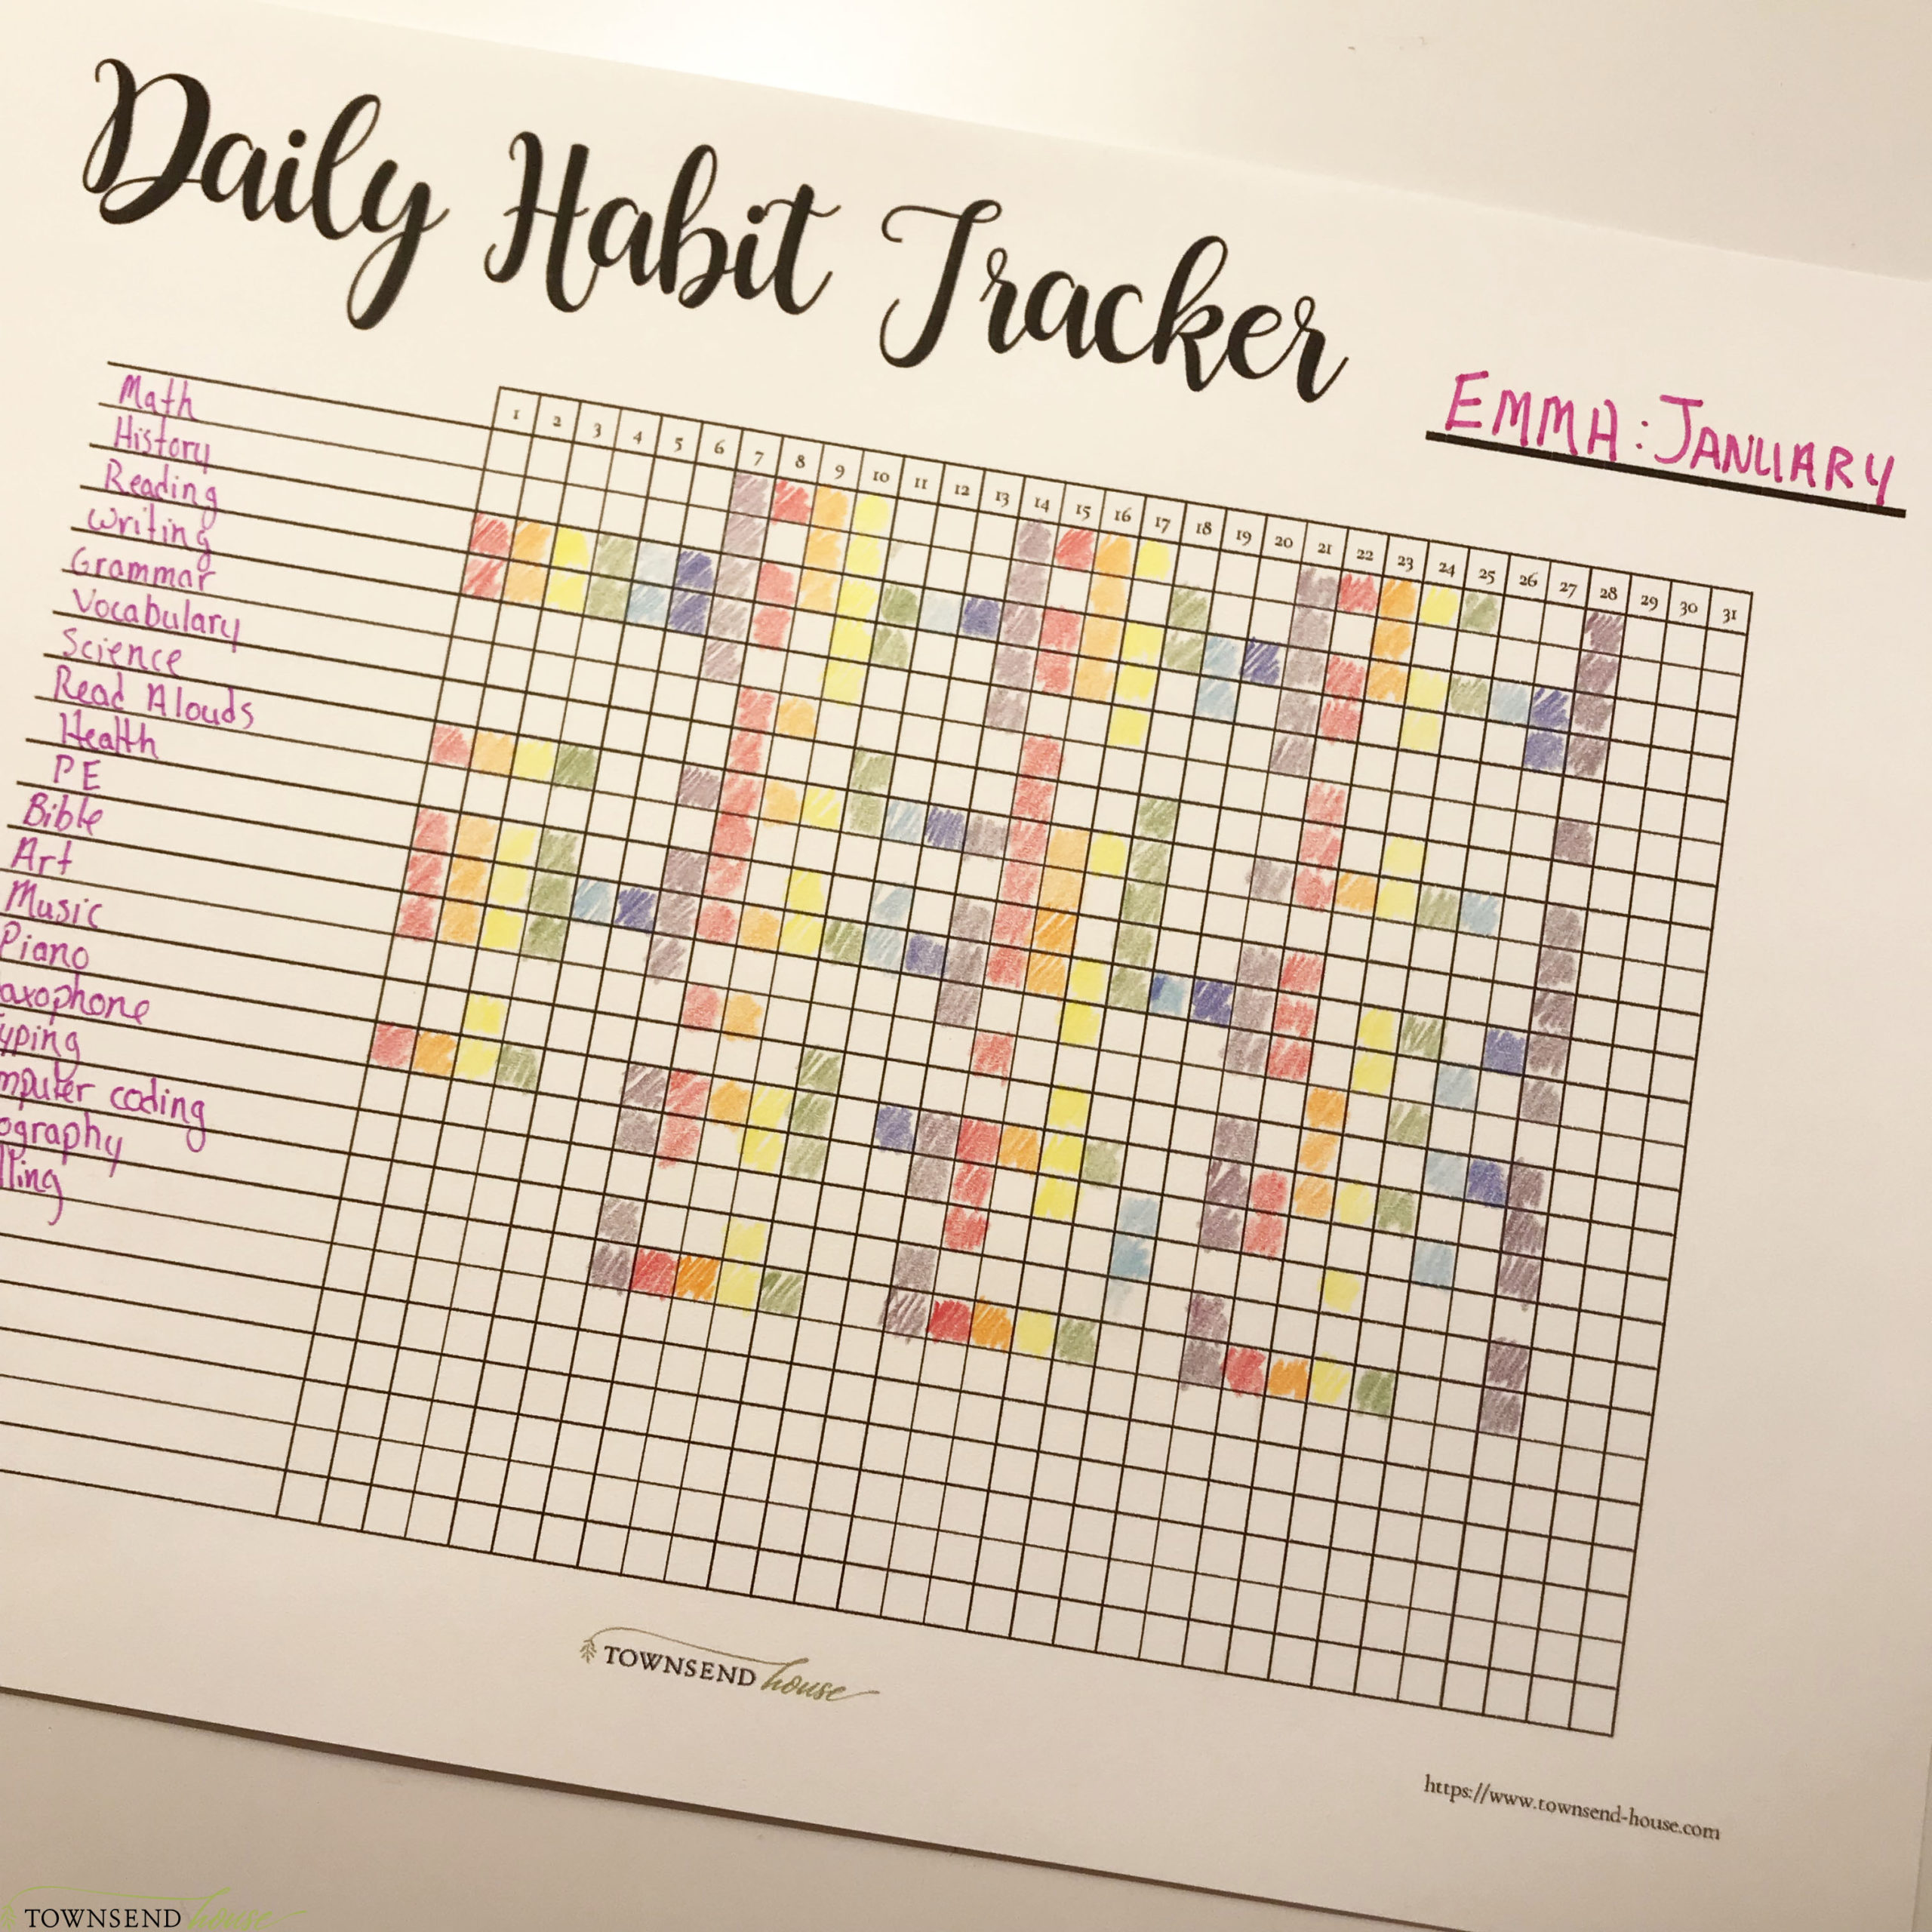 Daily Habit Tracker Ideas